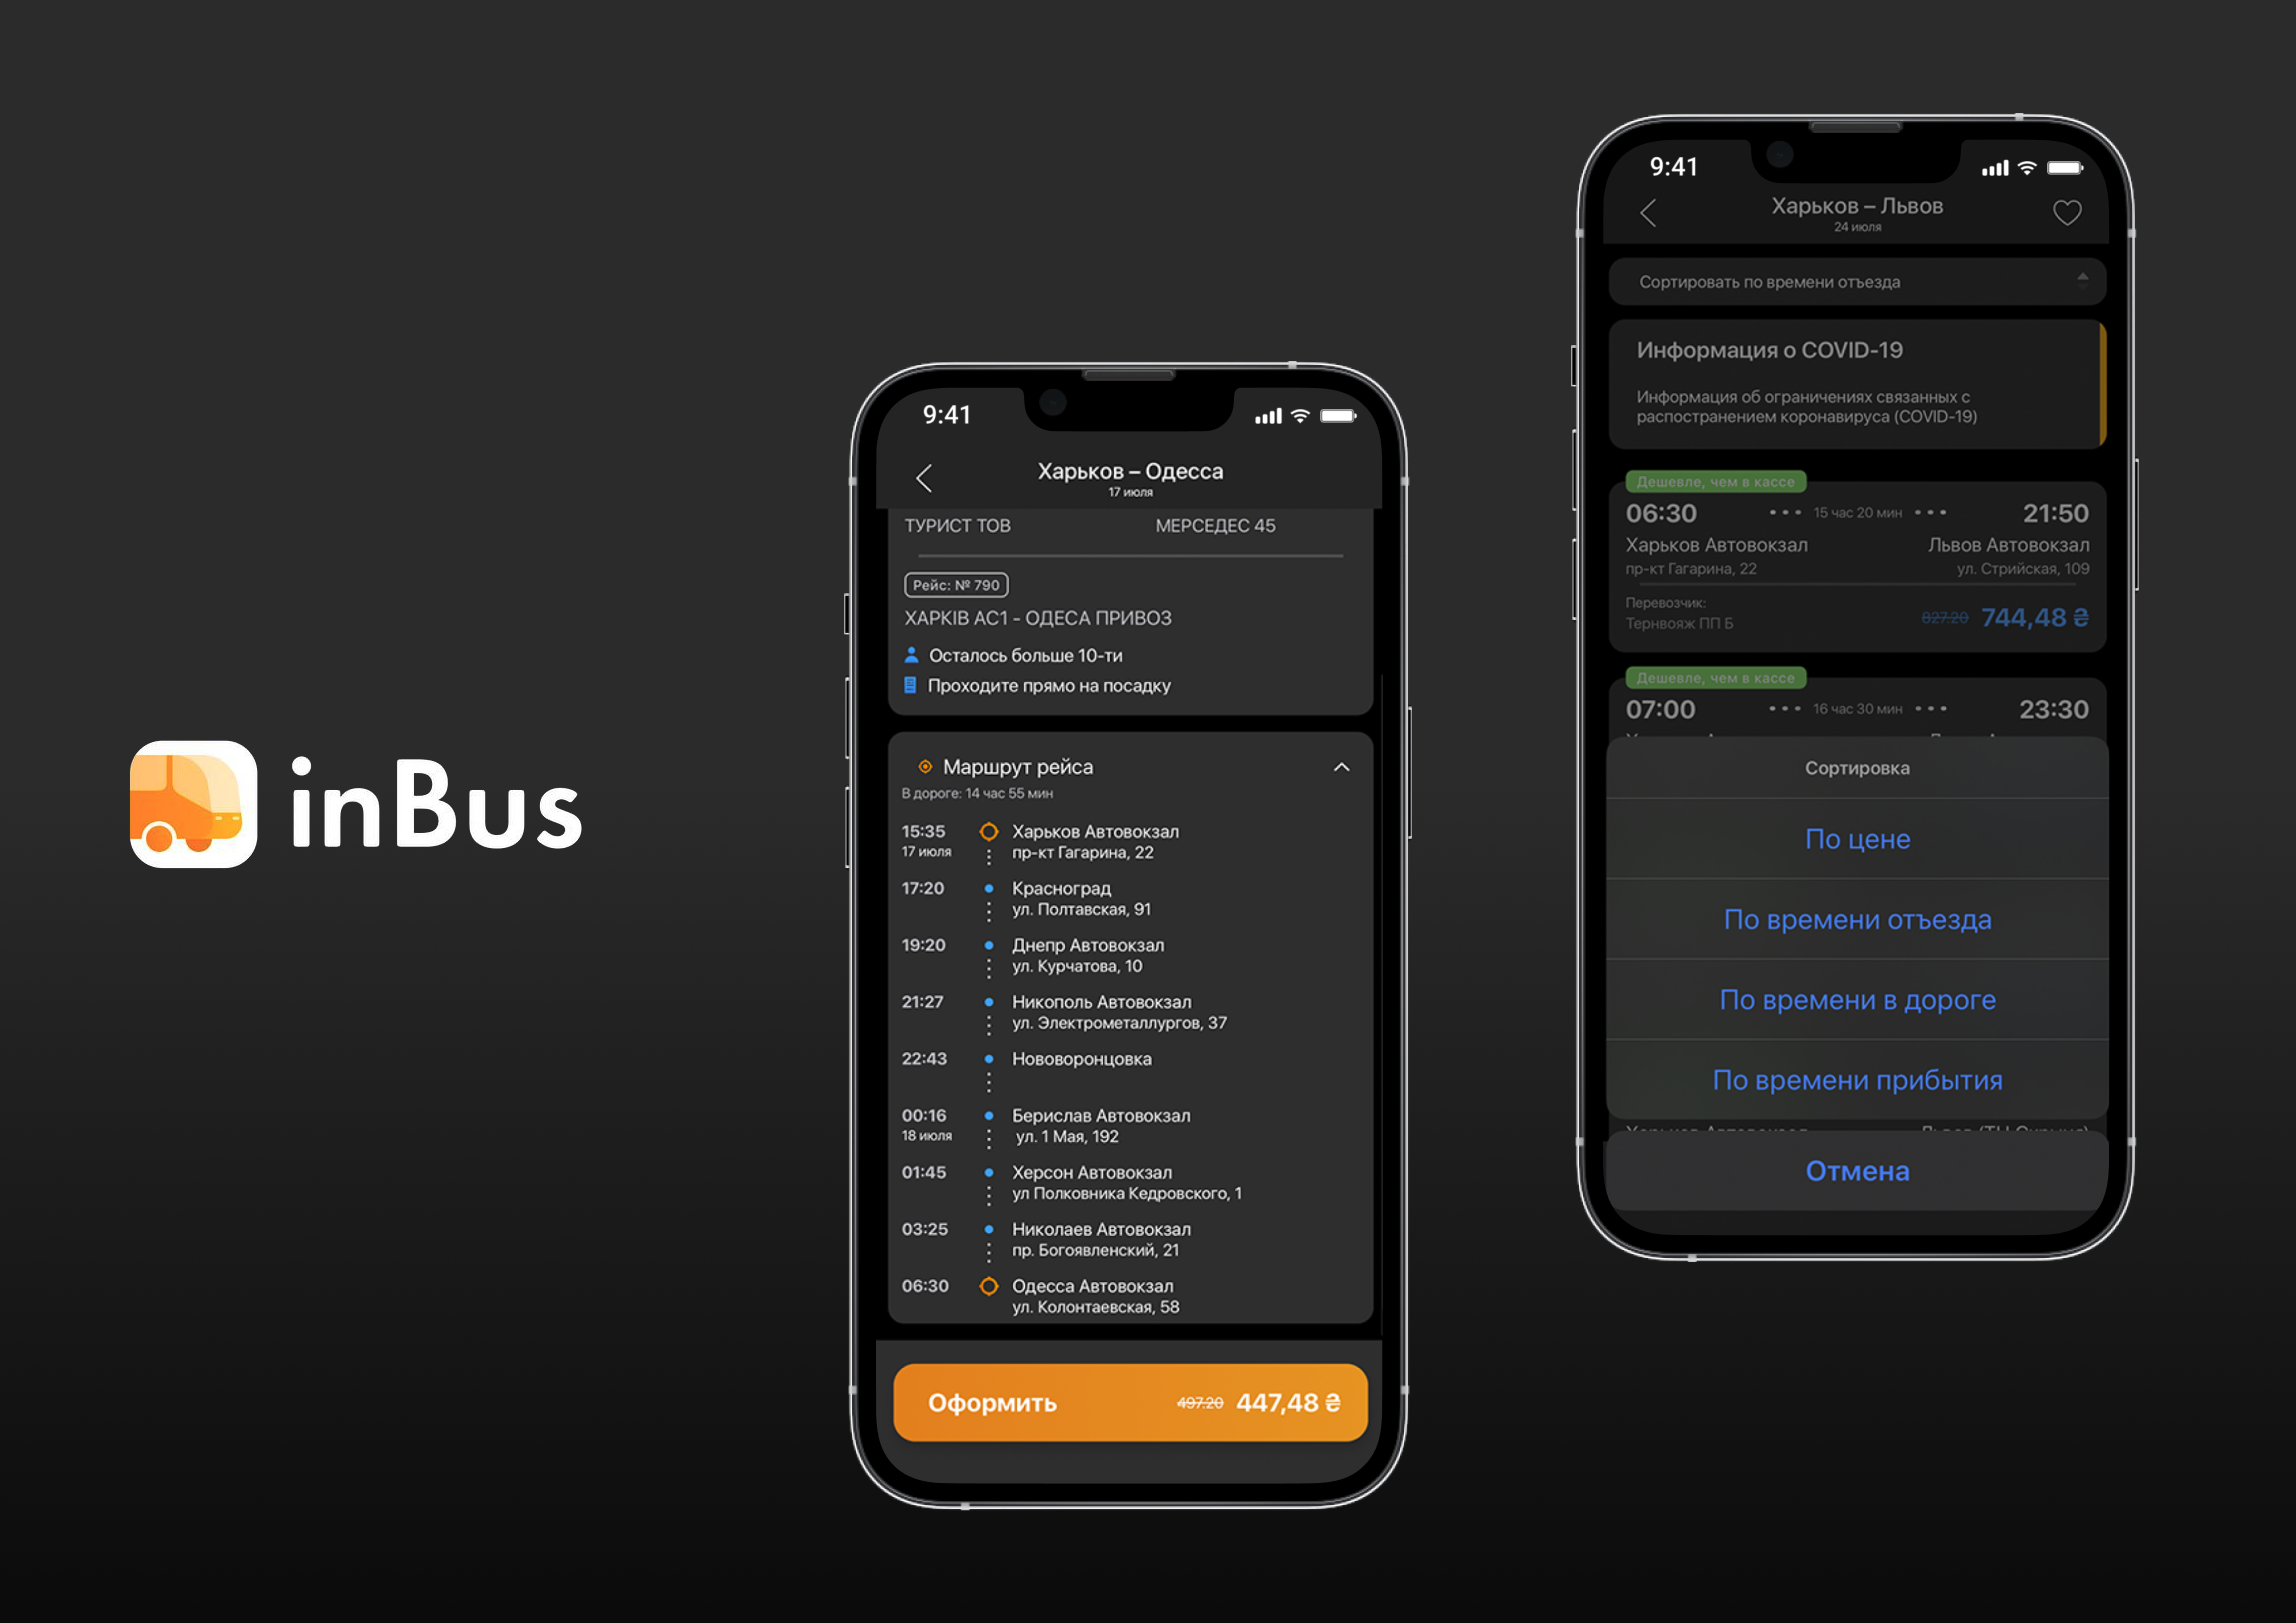 Inbus app